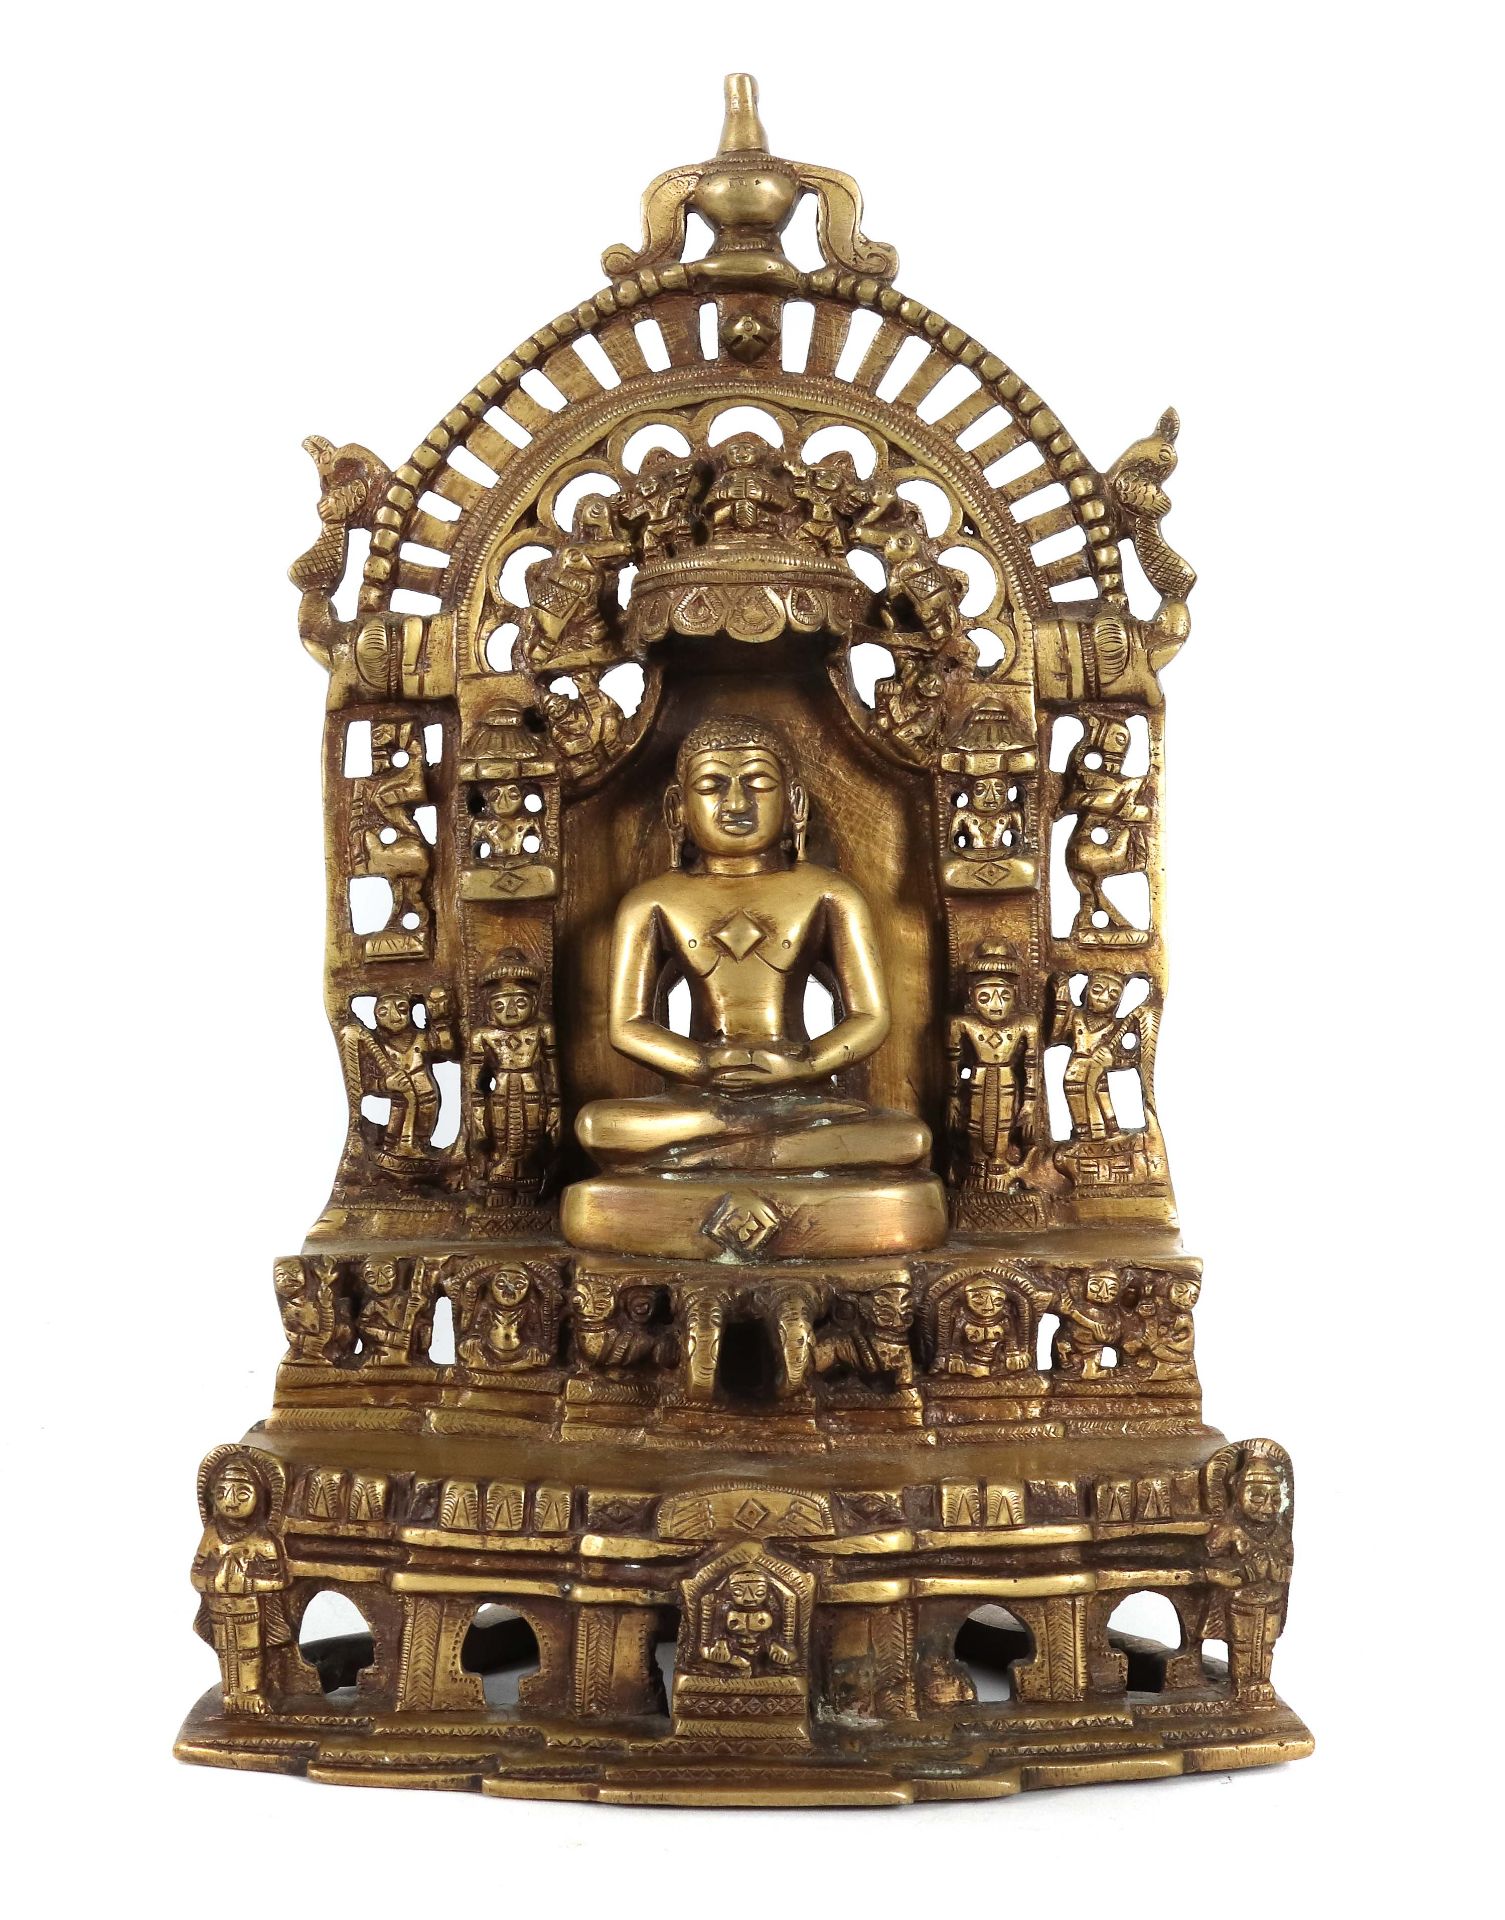 Buddhaähnliche Figur der Jains